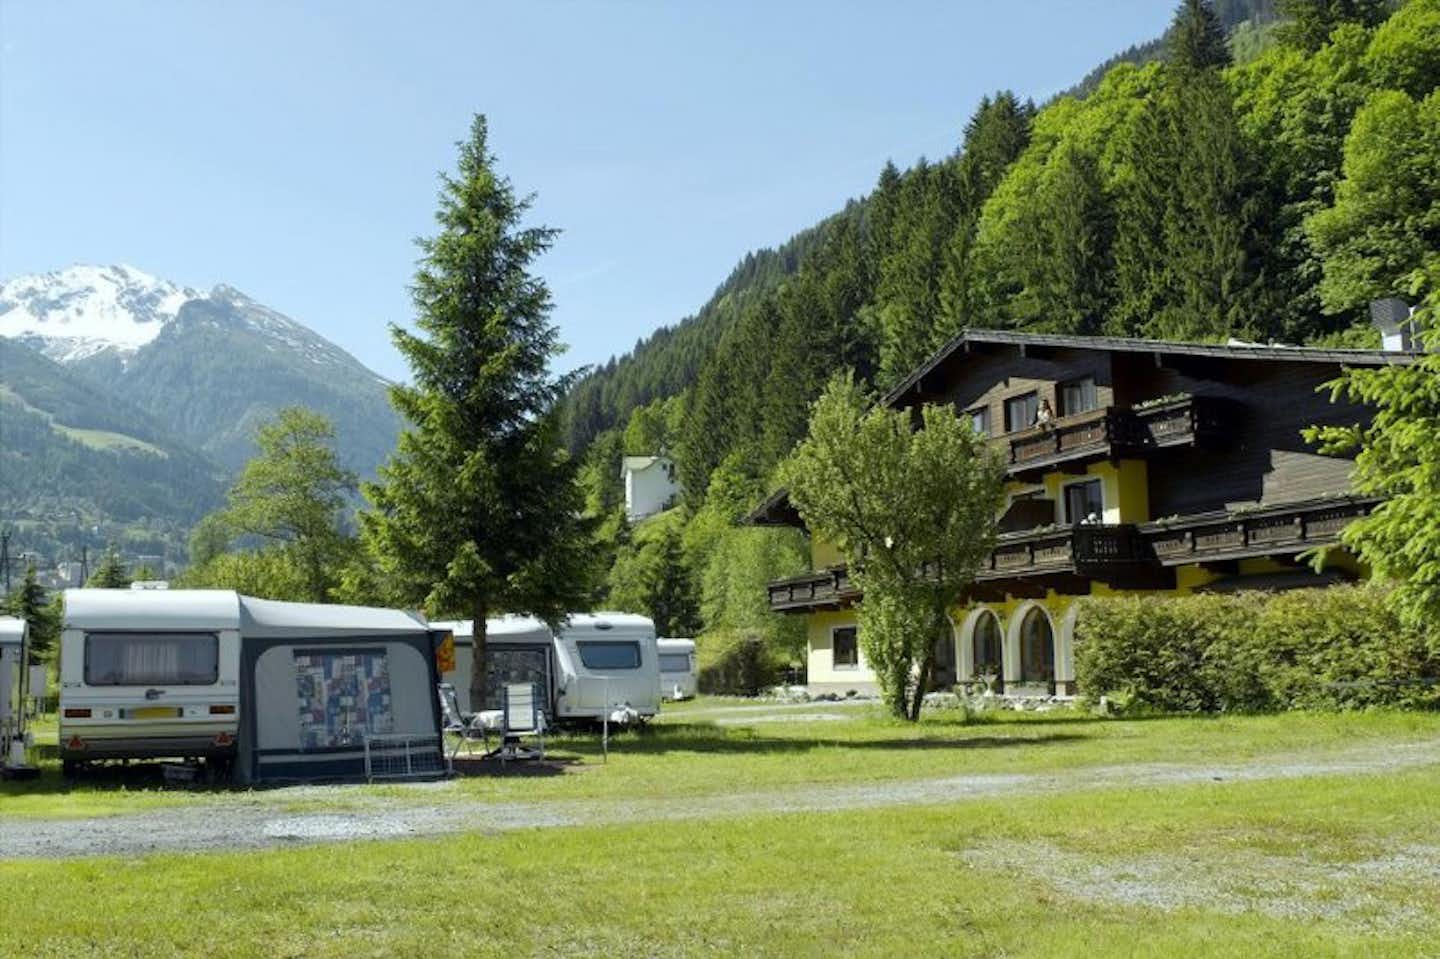 Kurcamping Erlengrund - Wohnwagen und Hauptgebäude des Campingplatzes